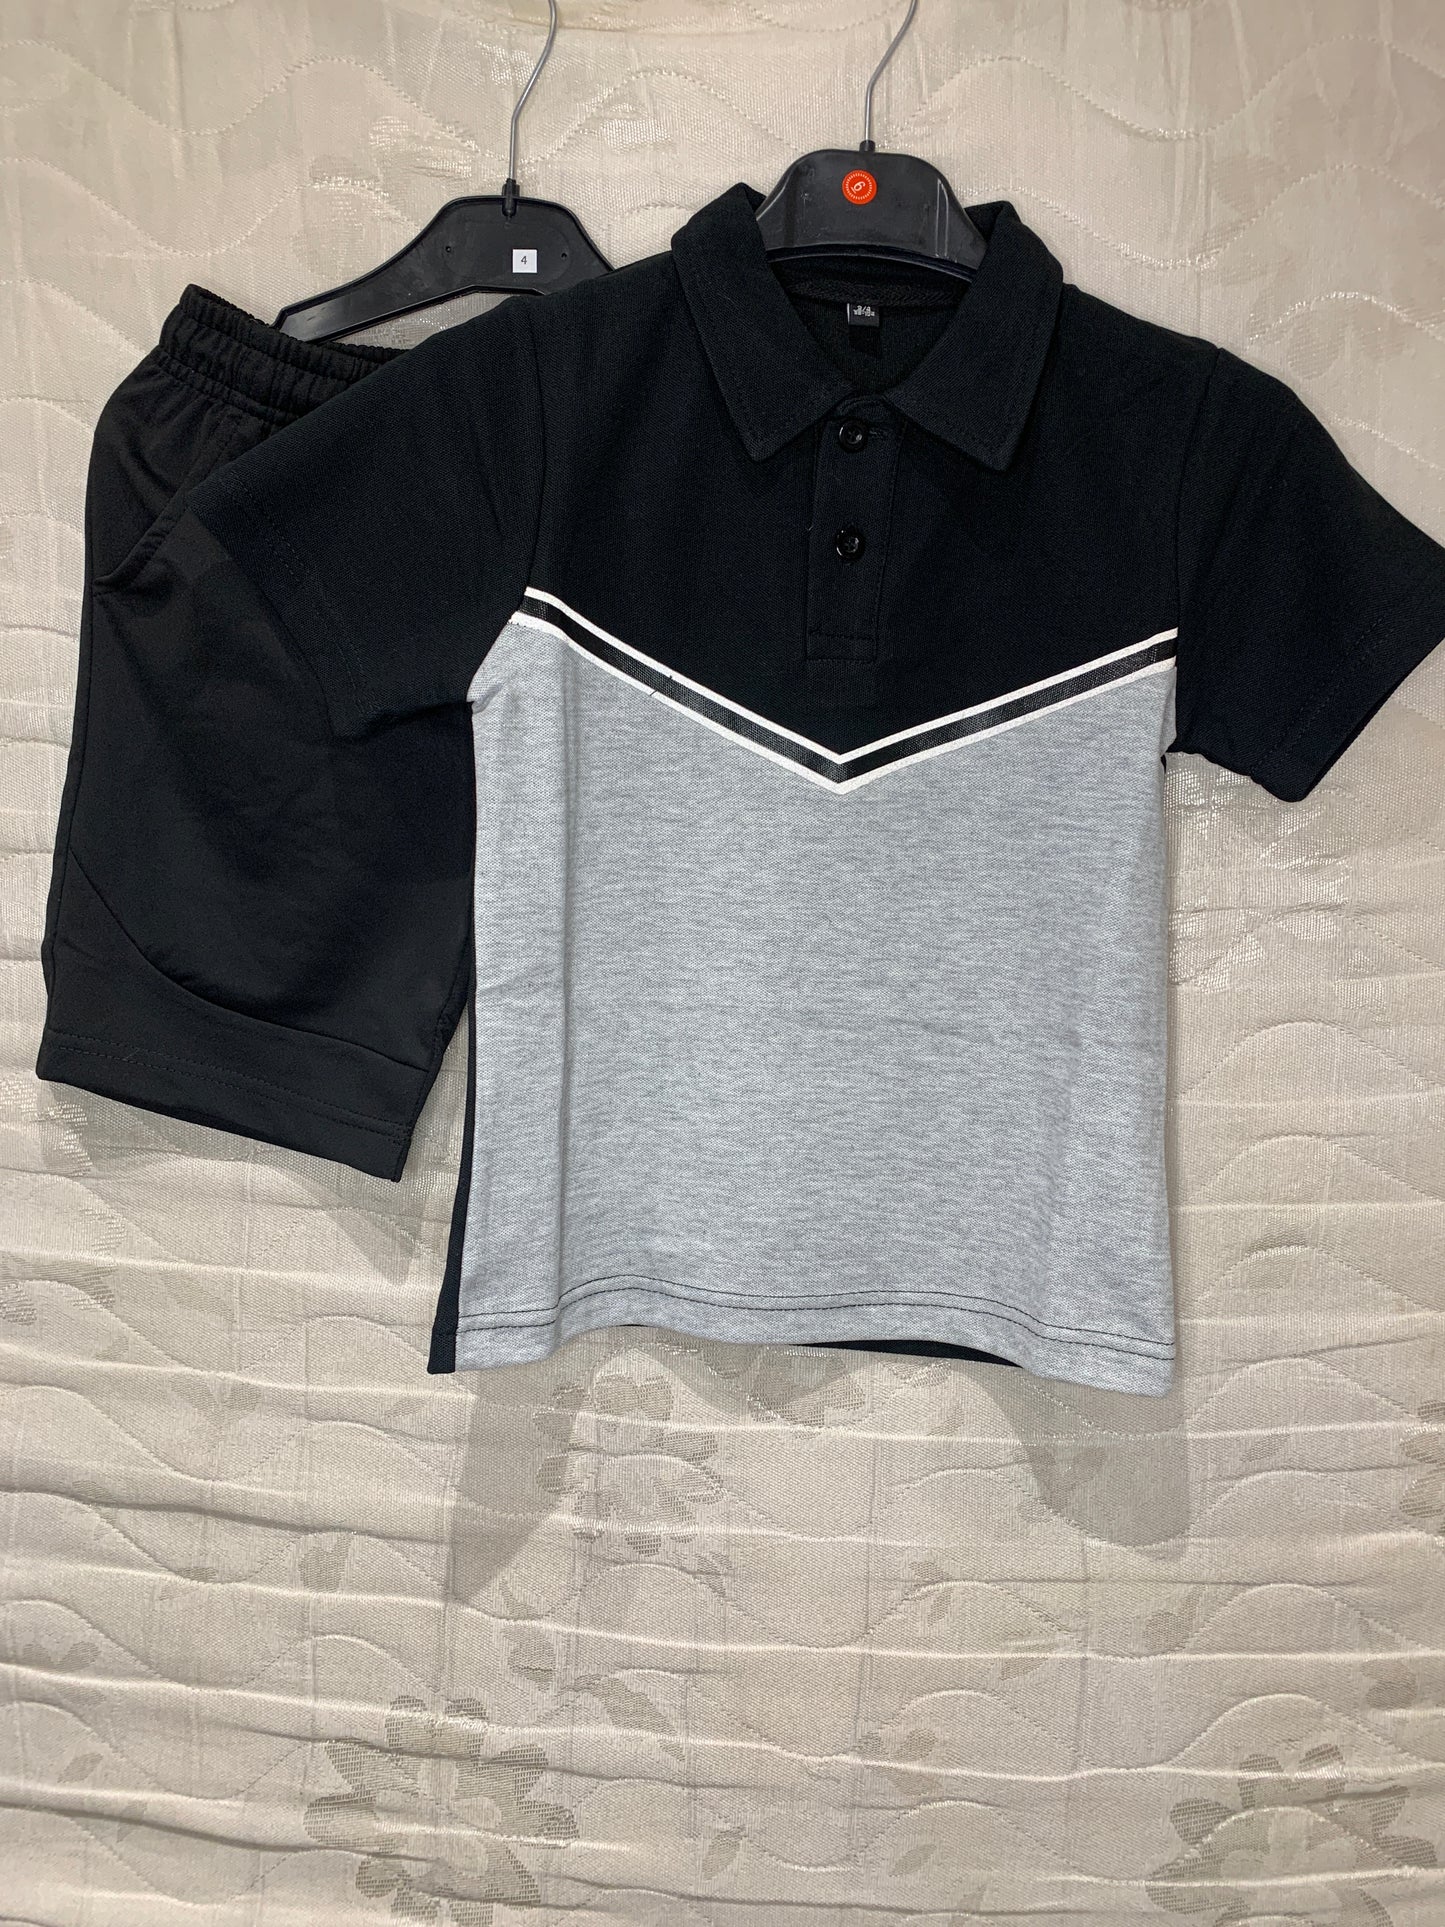 Boys Polo Tshirt & Shorts Sets